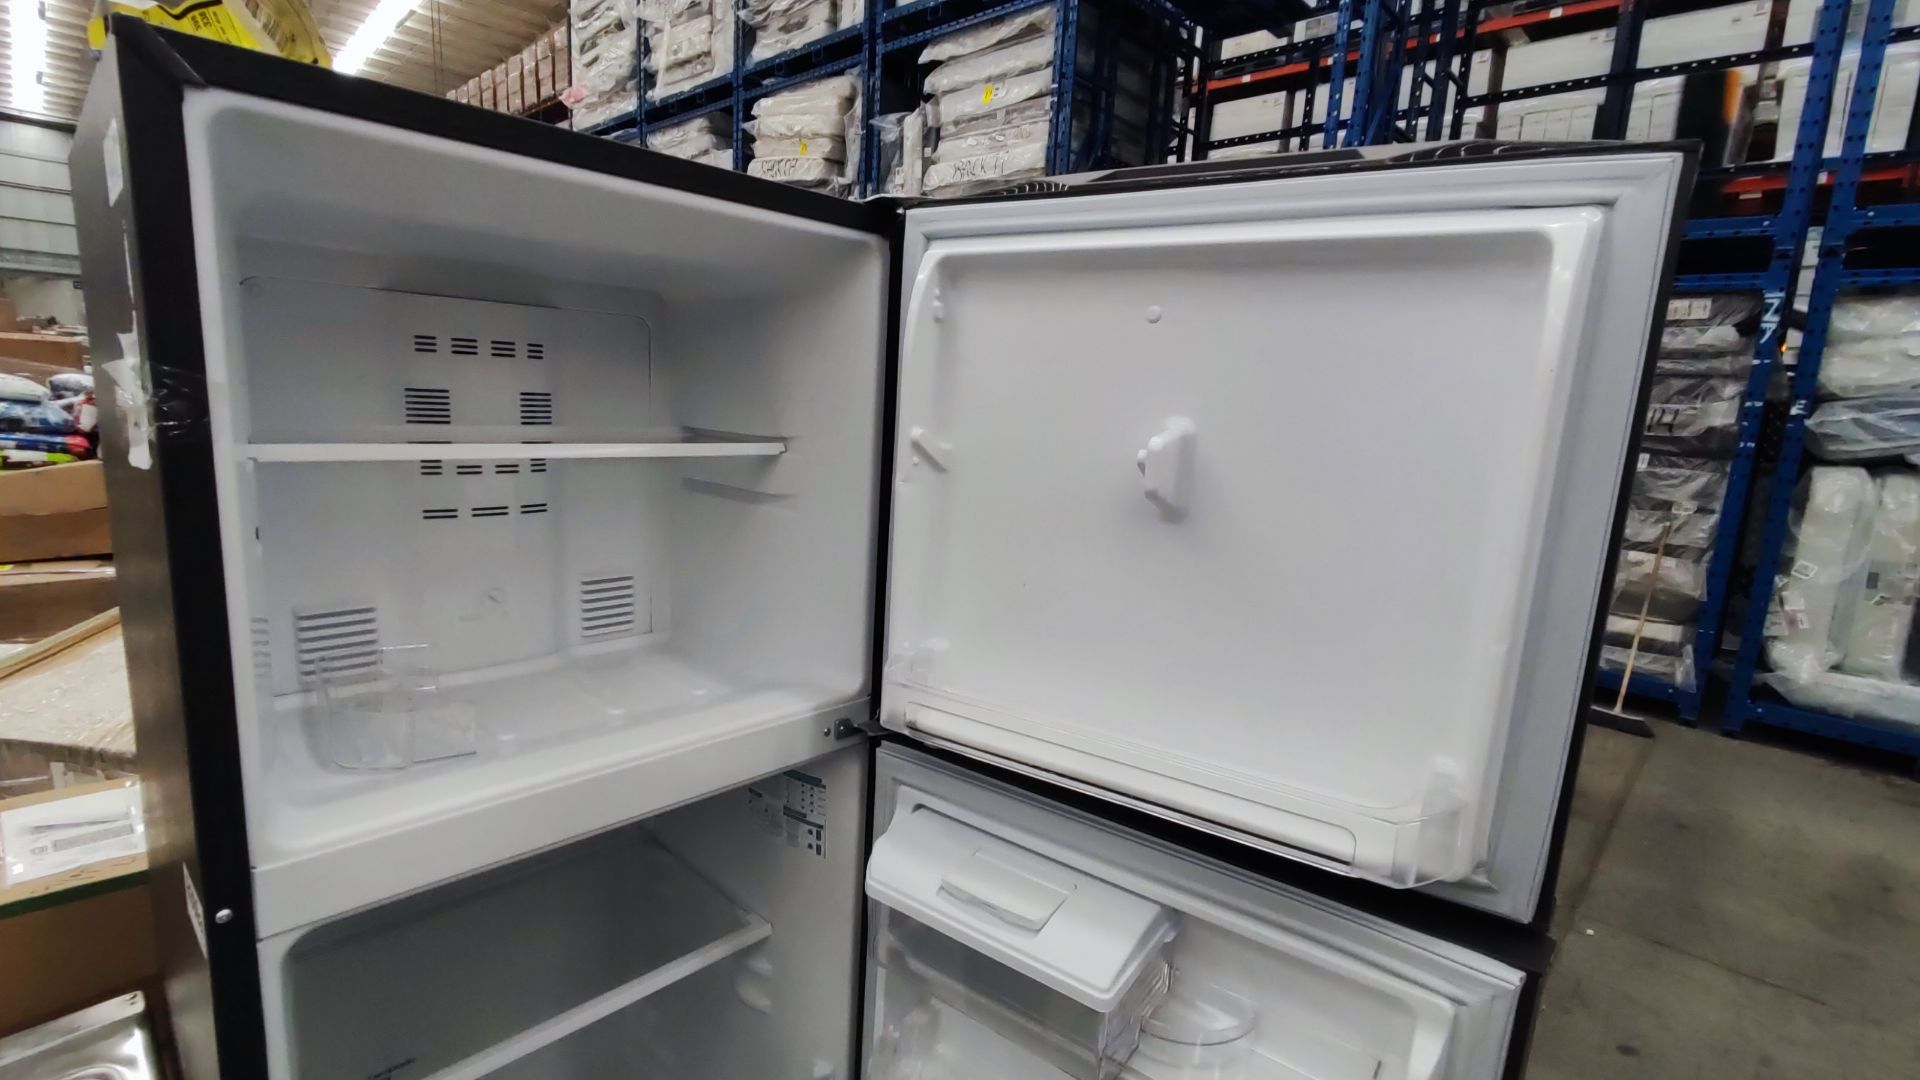 1 Refrigerador Marca Mabe, Modelo RMA300FJMR, Serie 2204B712240, Color Gris, Detalles Estéticos, Fa - Image 9 of 11